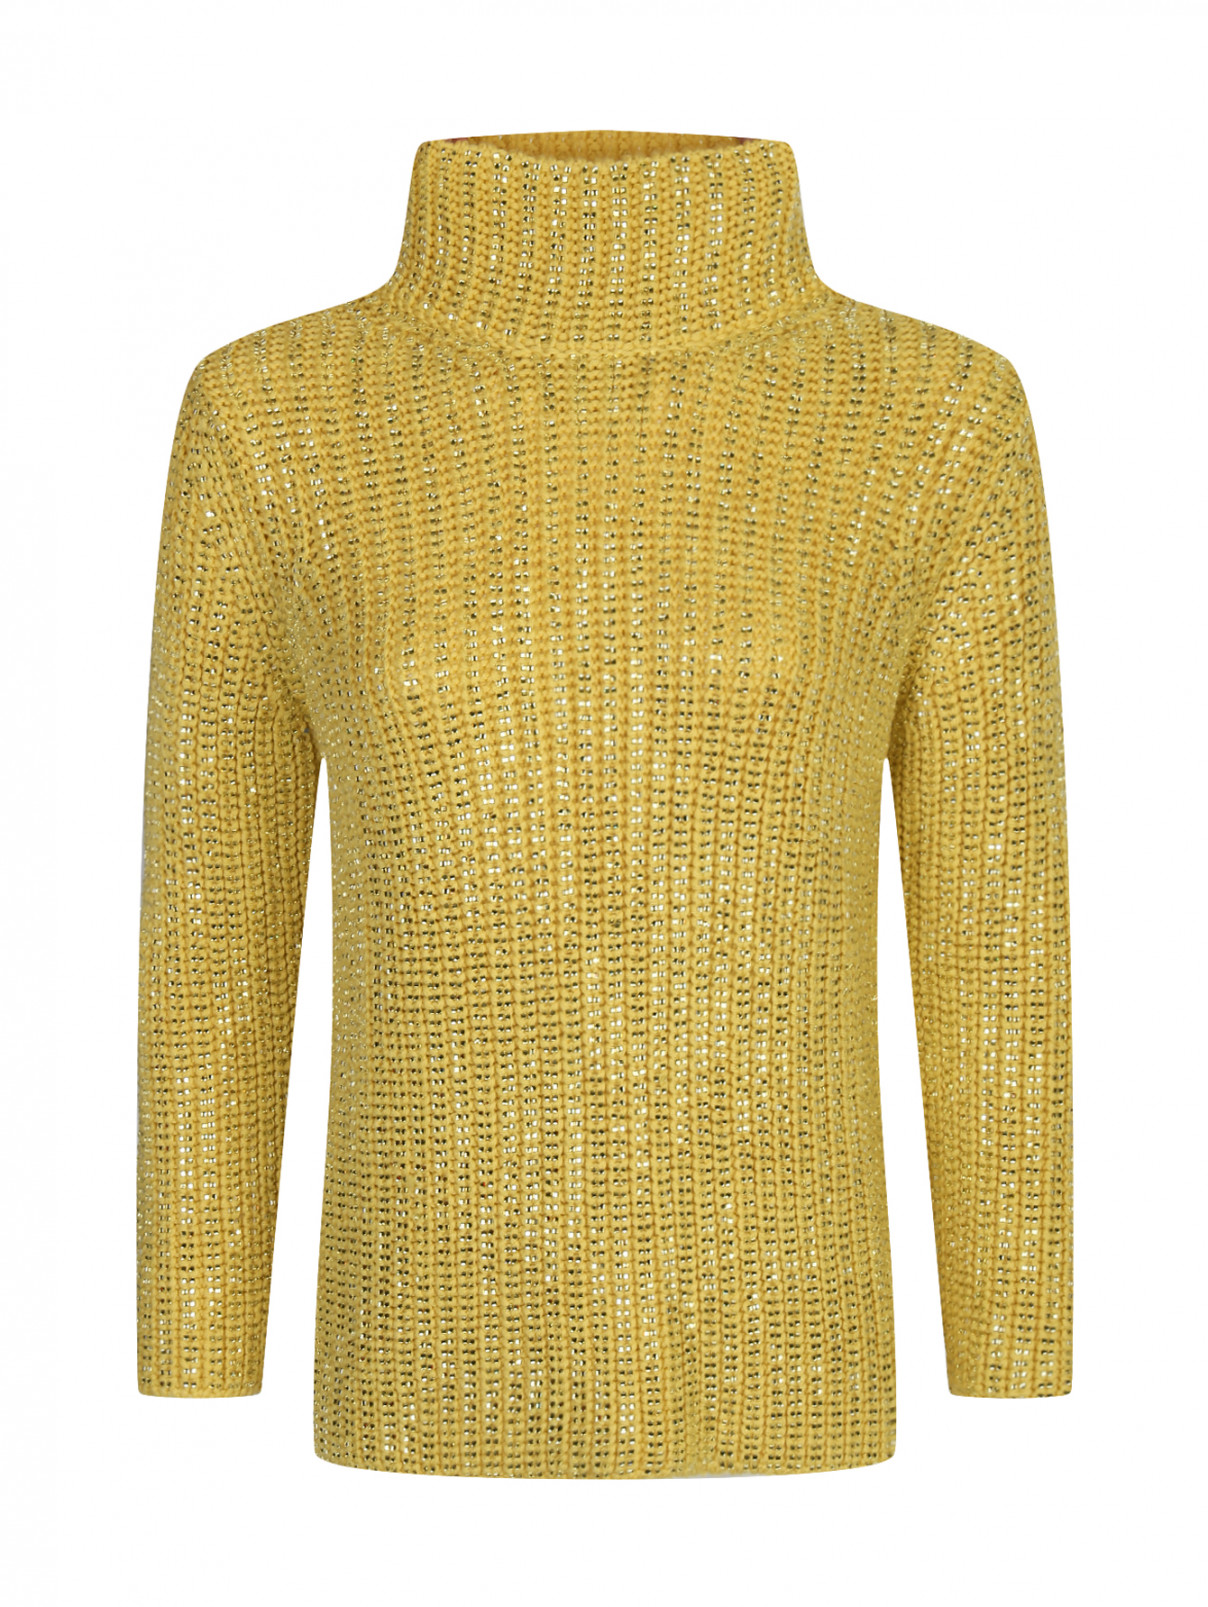 Джемпер из шерсти декорированный стразами Ermanno Scervino  –  Общий вид  – Цвет:  Желтый